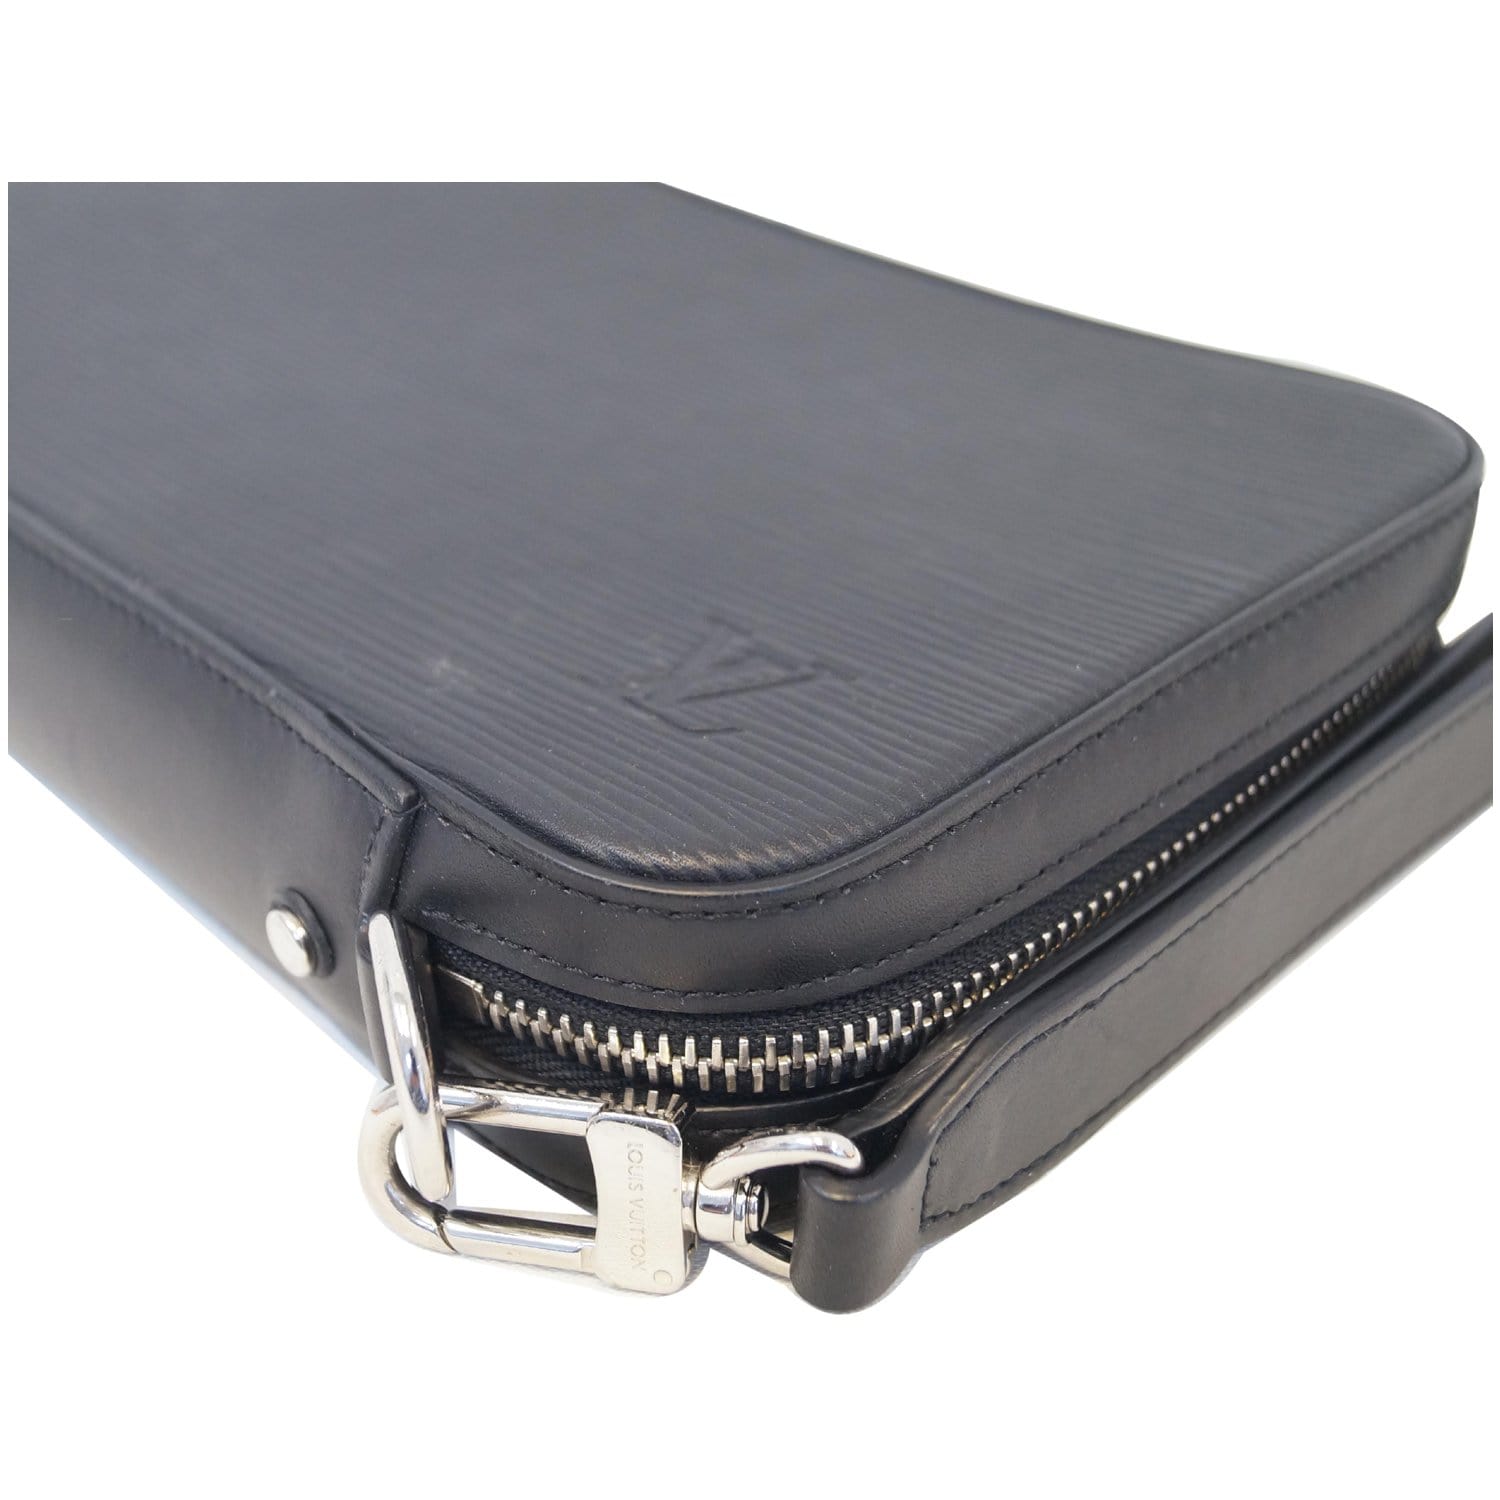 Louis Vuitton Dandy Briefcase Epi Leather MM Black 20441568